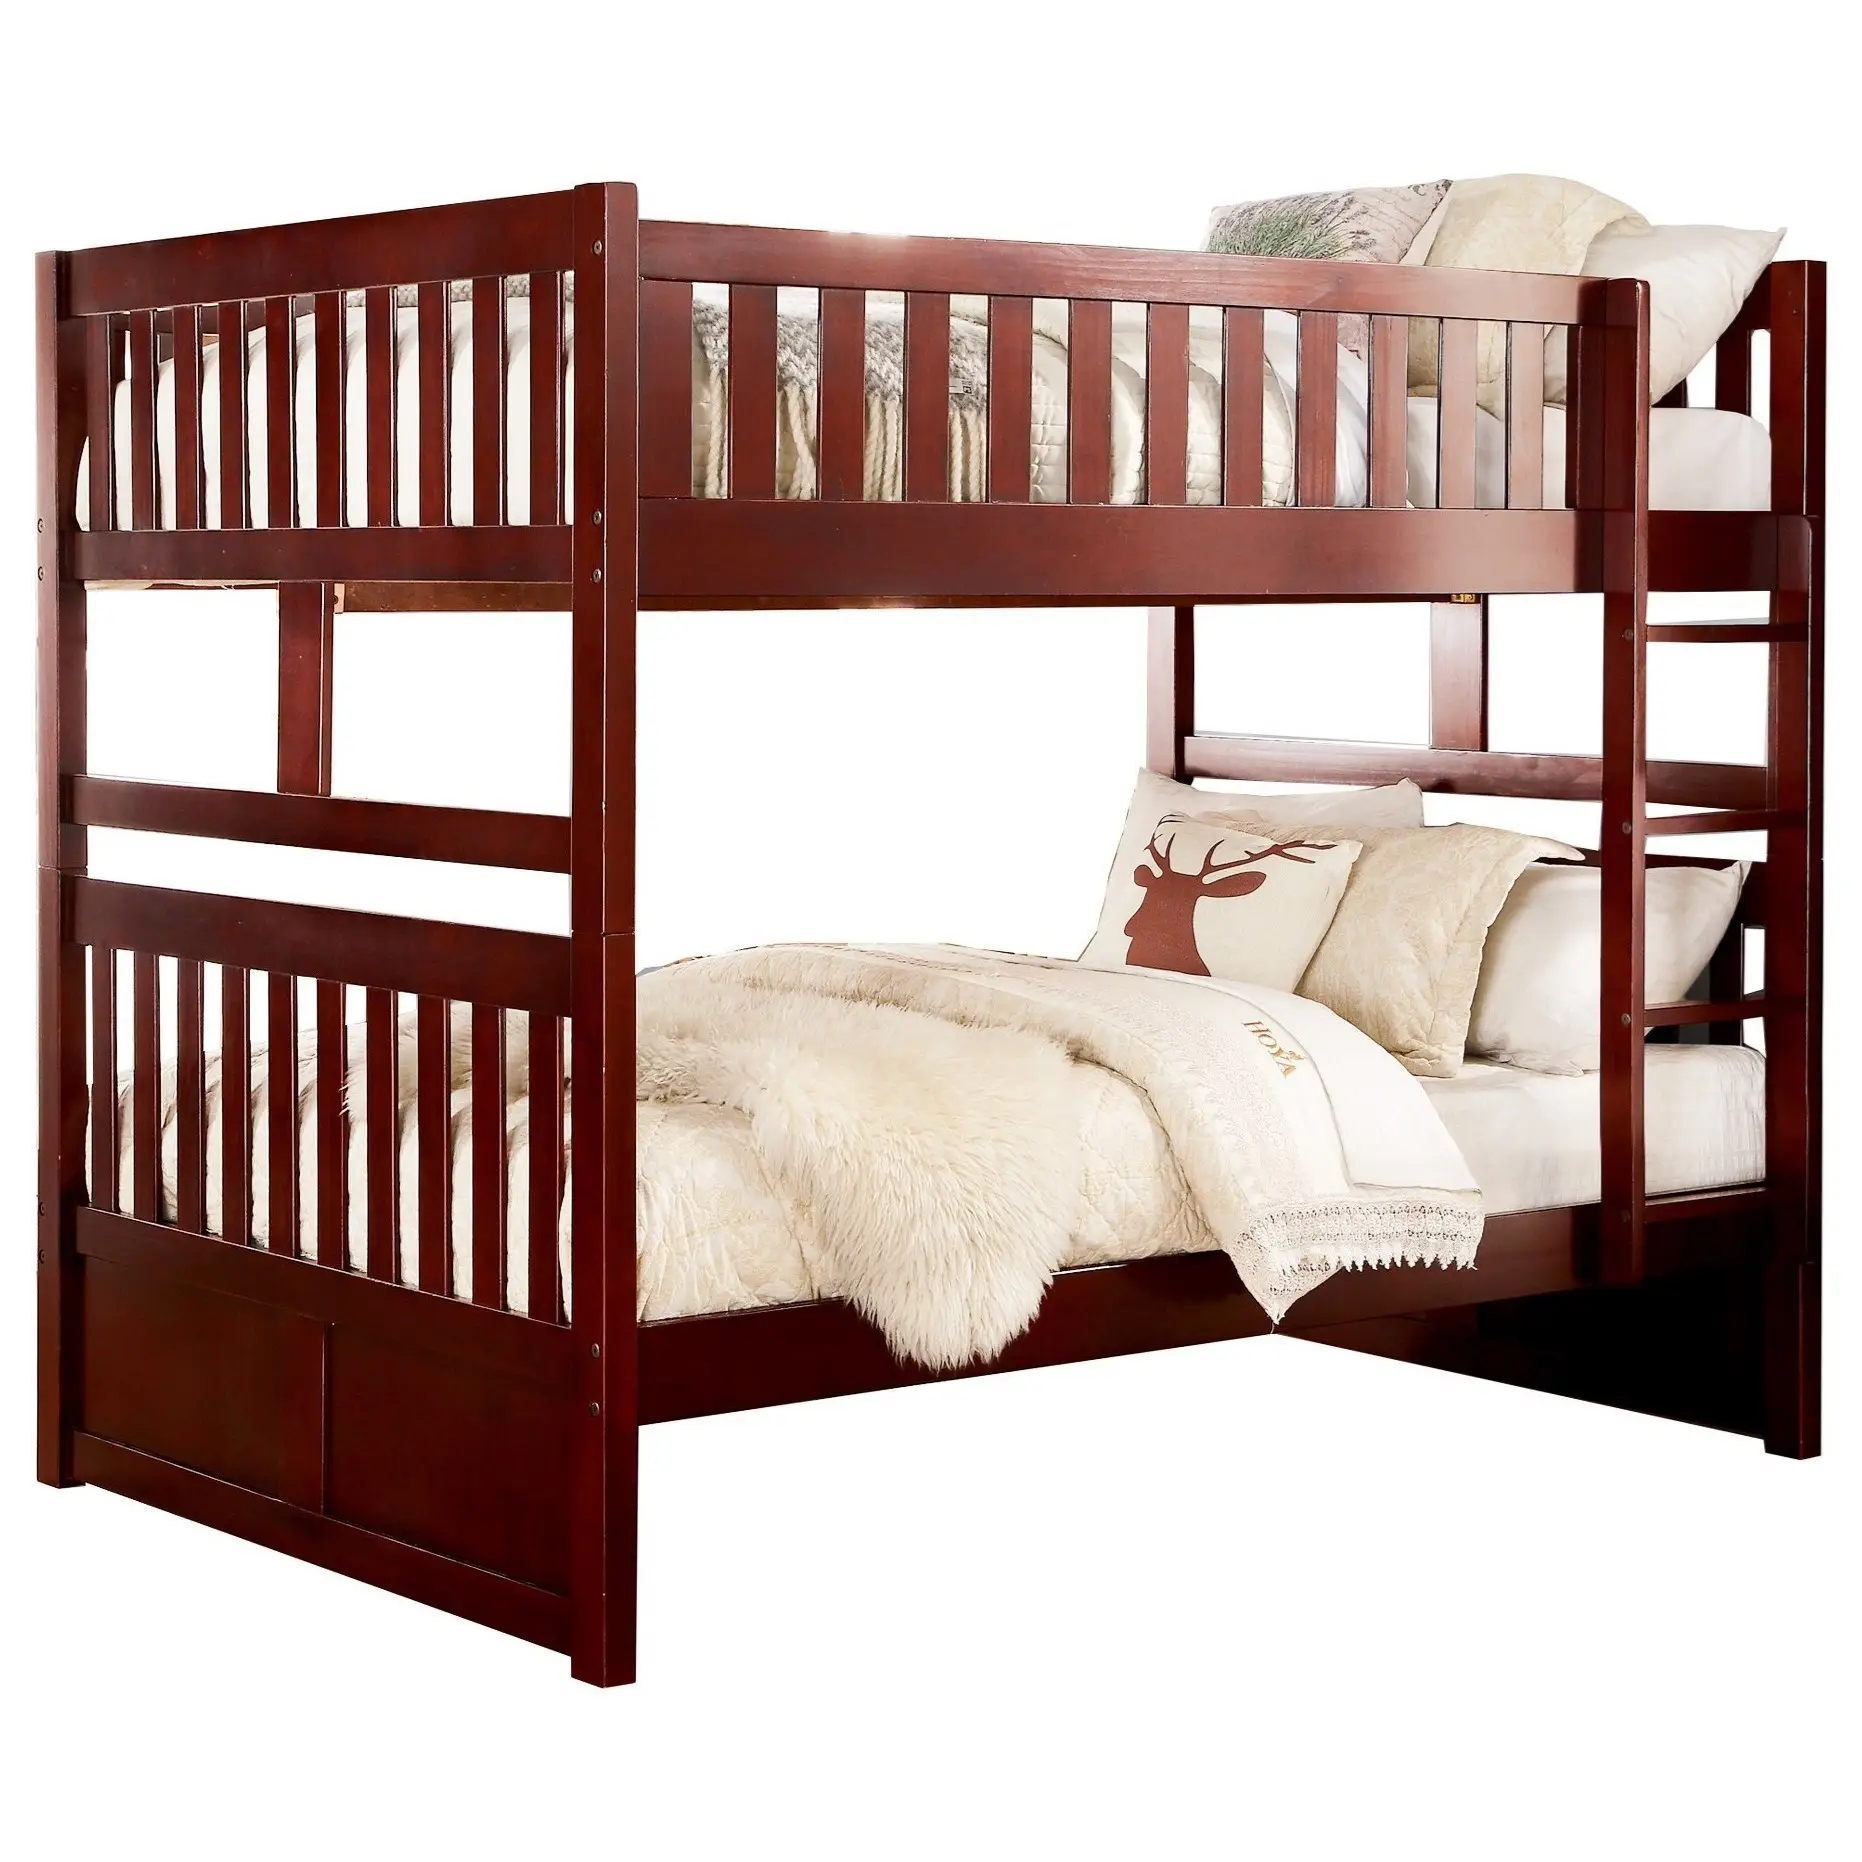 Conception de lits superposés en bois massif de qualité supérieure pour ensembles de meubles de chambre à coucher